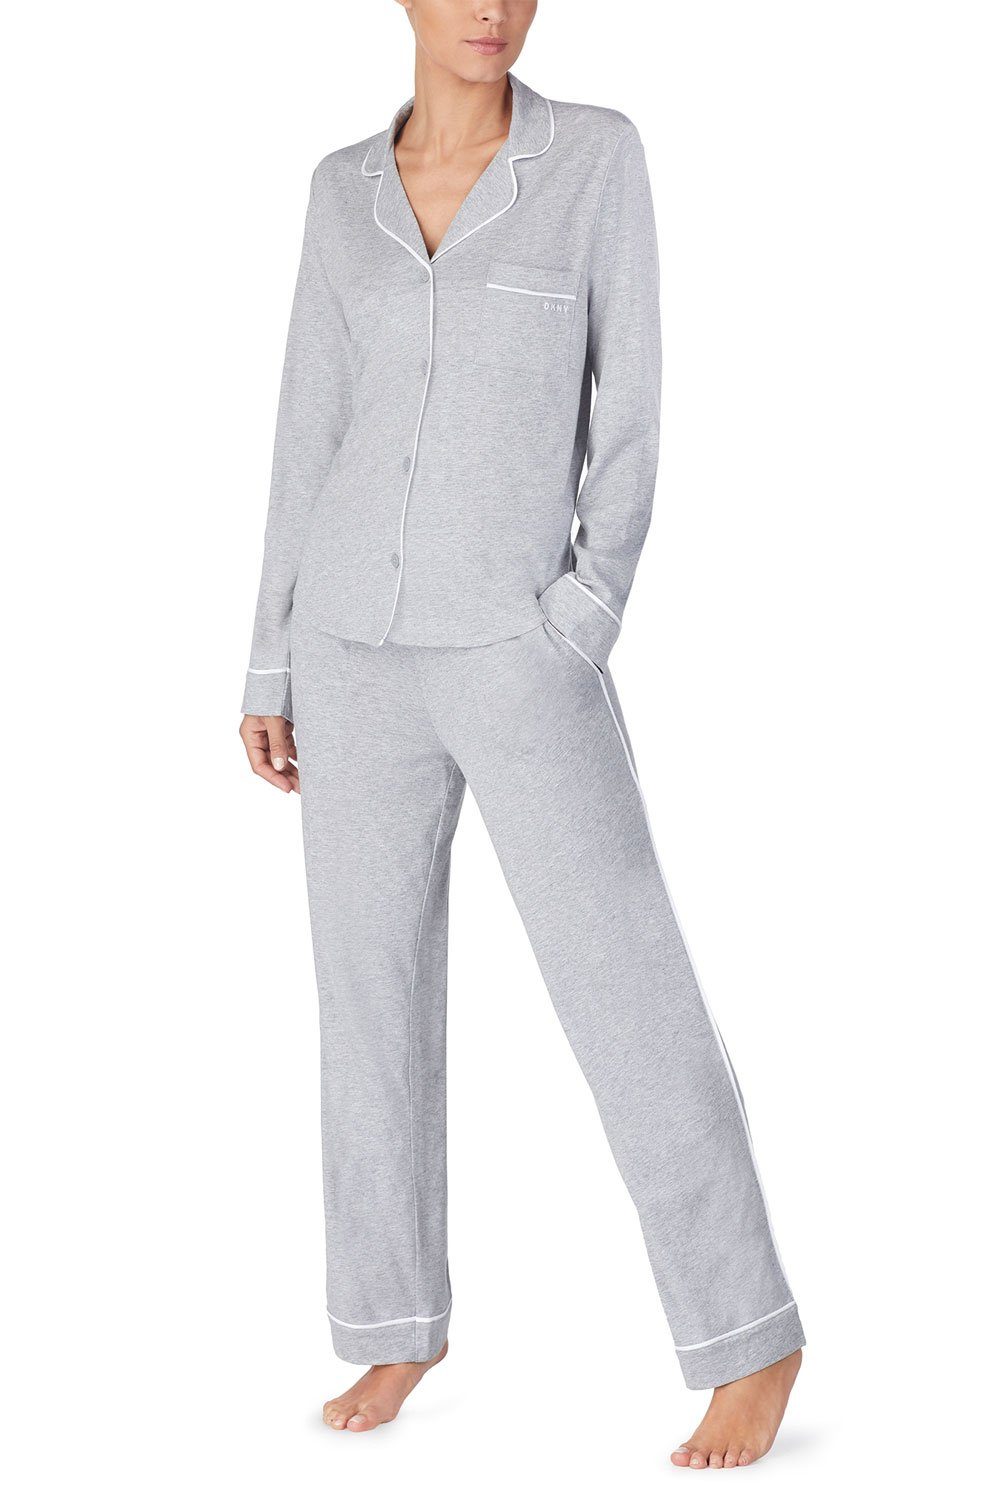 Set & Pant Pyjama DKNY Top YI2719259 grey